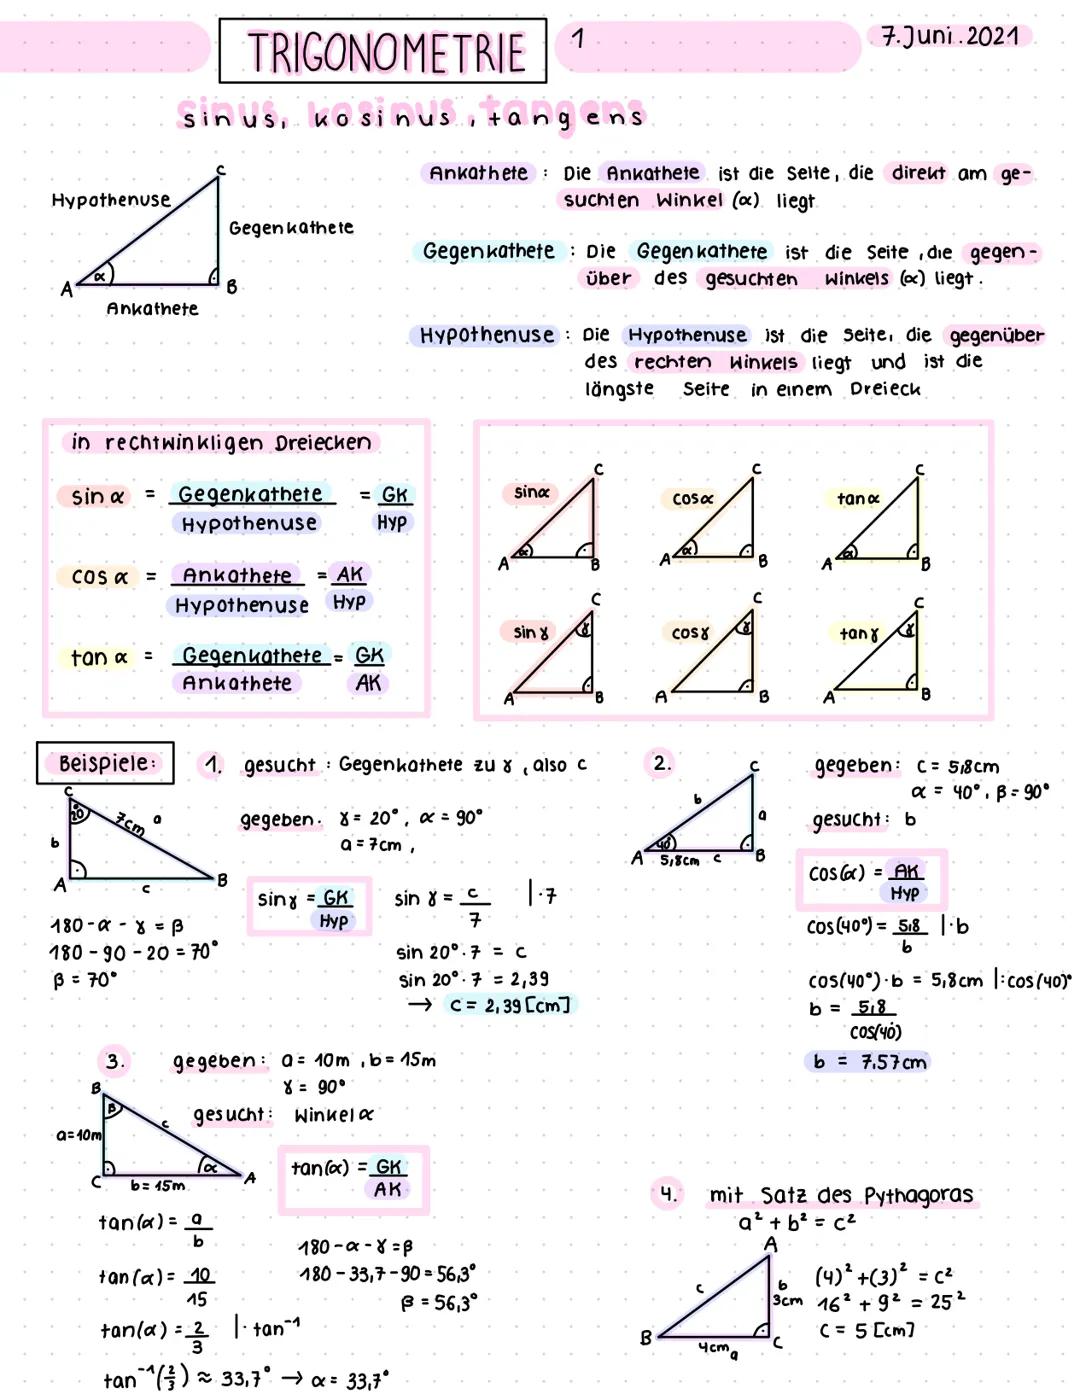 Hypothenuse
A
A
Ankathete
COS α =
tan α =
Beispiele:
in rechtwinkligen Dreiecken
sin α = Gegenkathete = GK
Hypothenuse Hyp
a=10m
7cm
TRIGONO